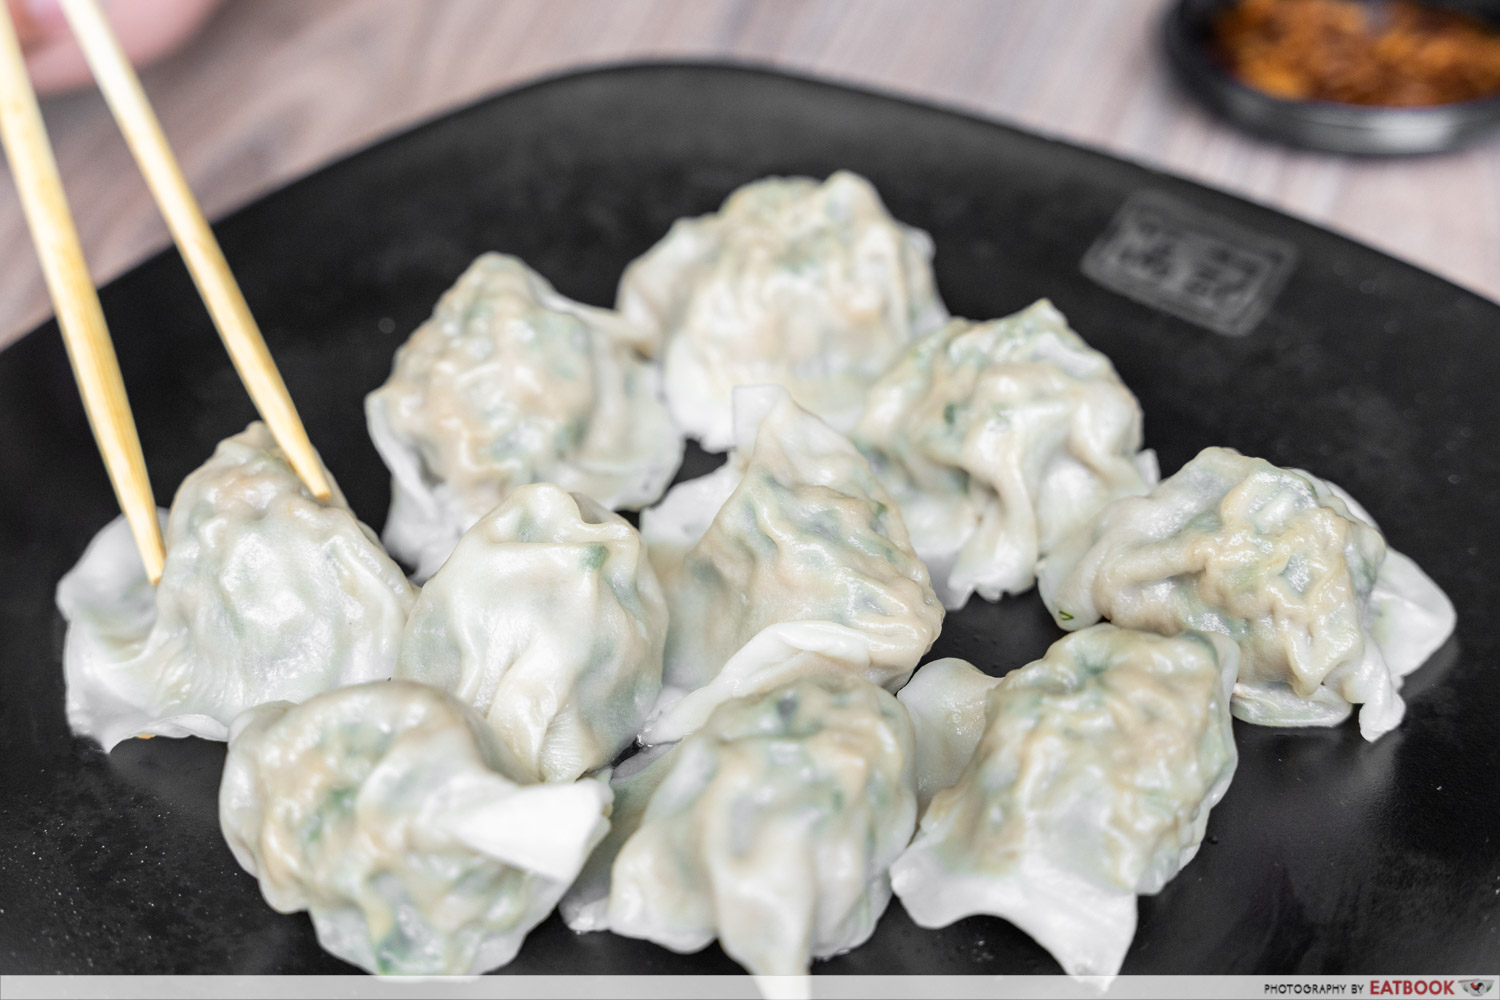 tian jin fong kee - dumplings intro